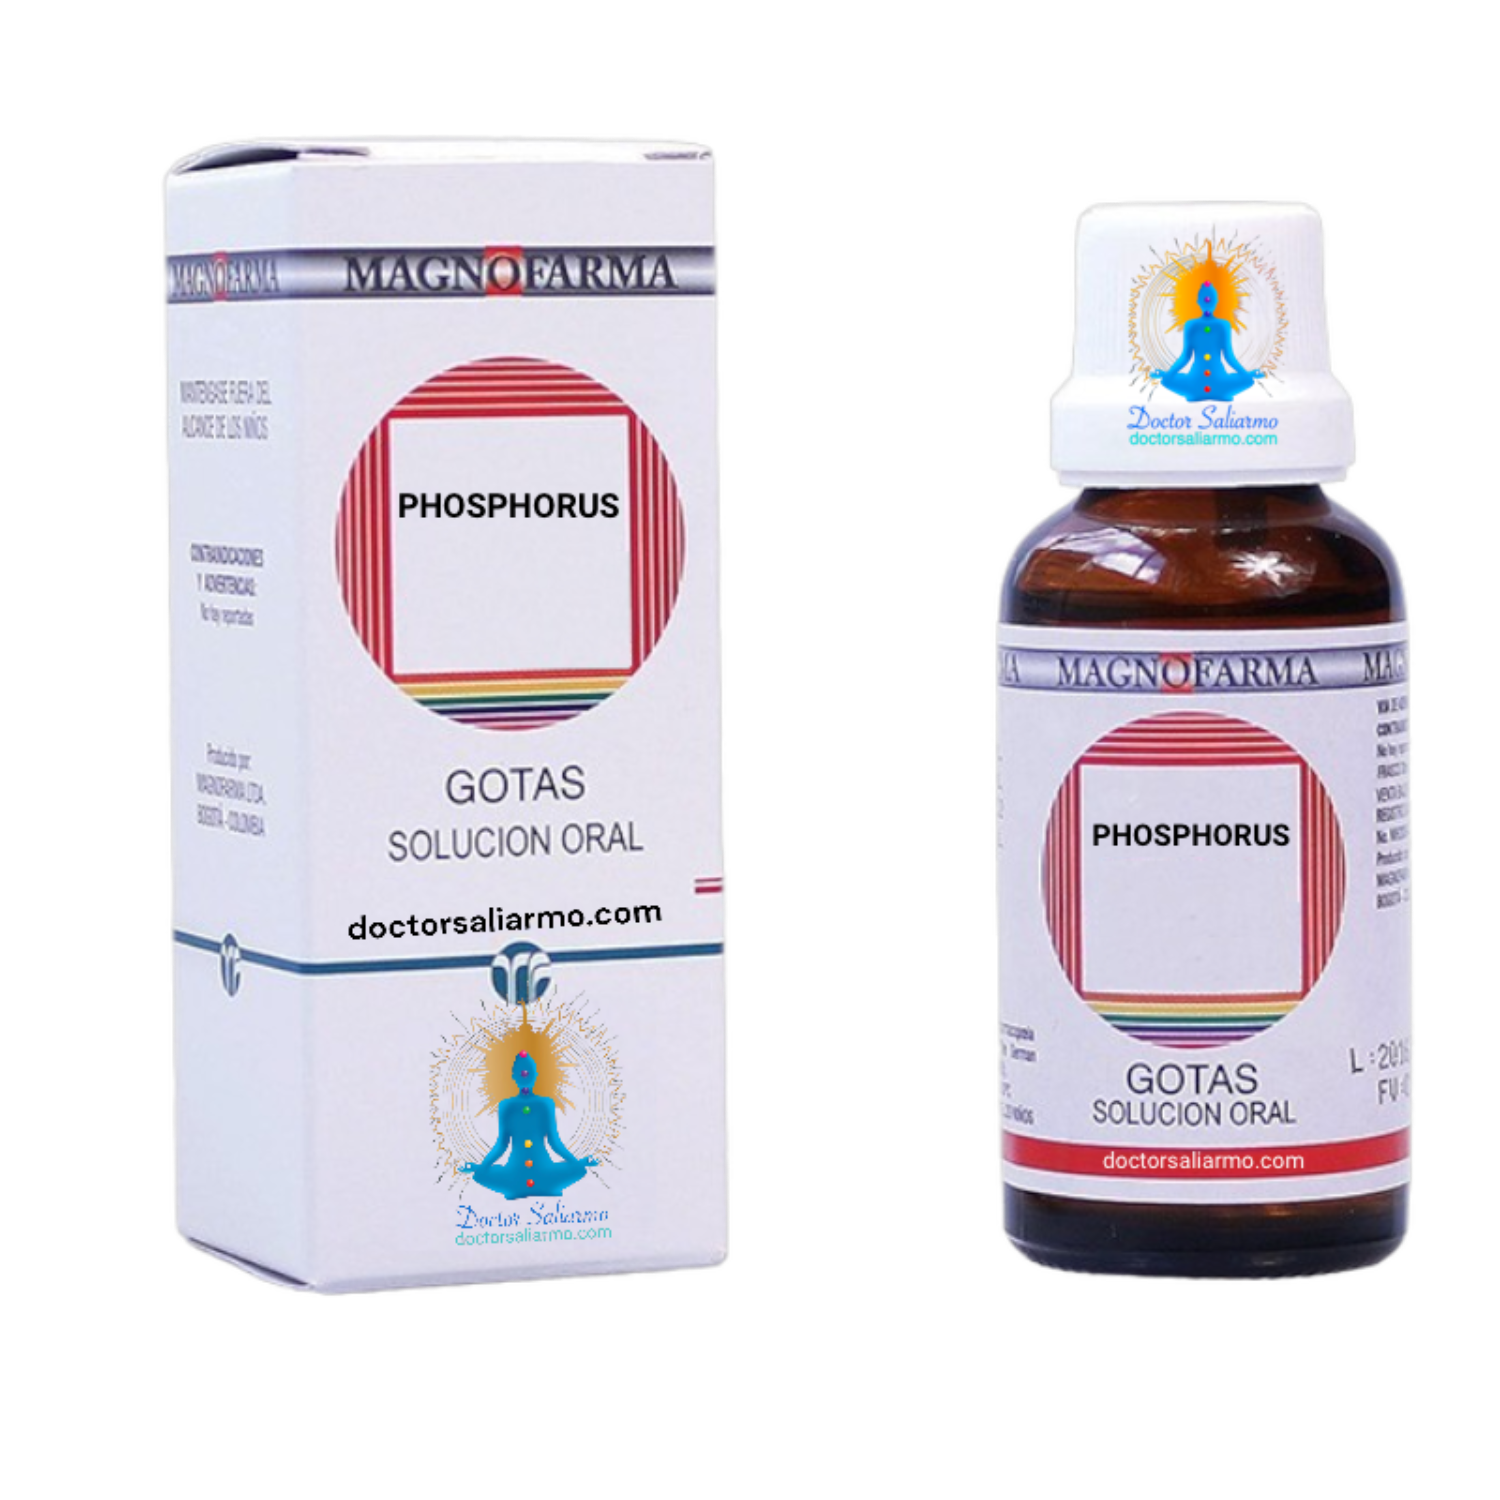 phosphorus multipot es un medicamento homeopático indicado en #ronquera #afonía #laringitis #hemorragias petequiales #aparato fonador